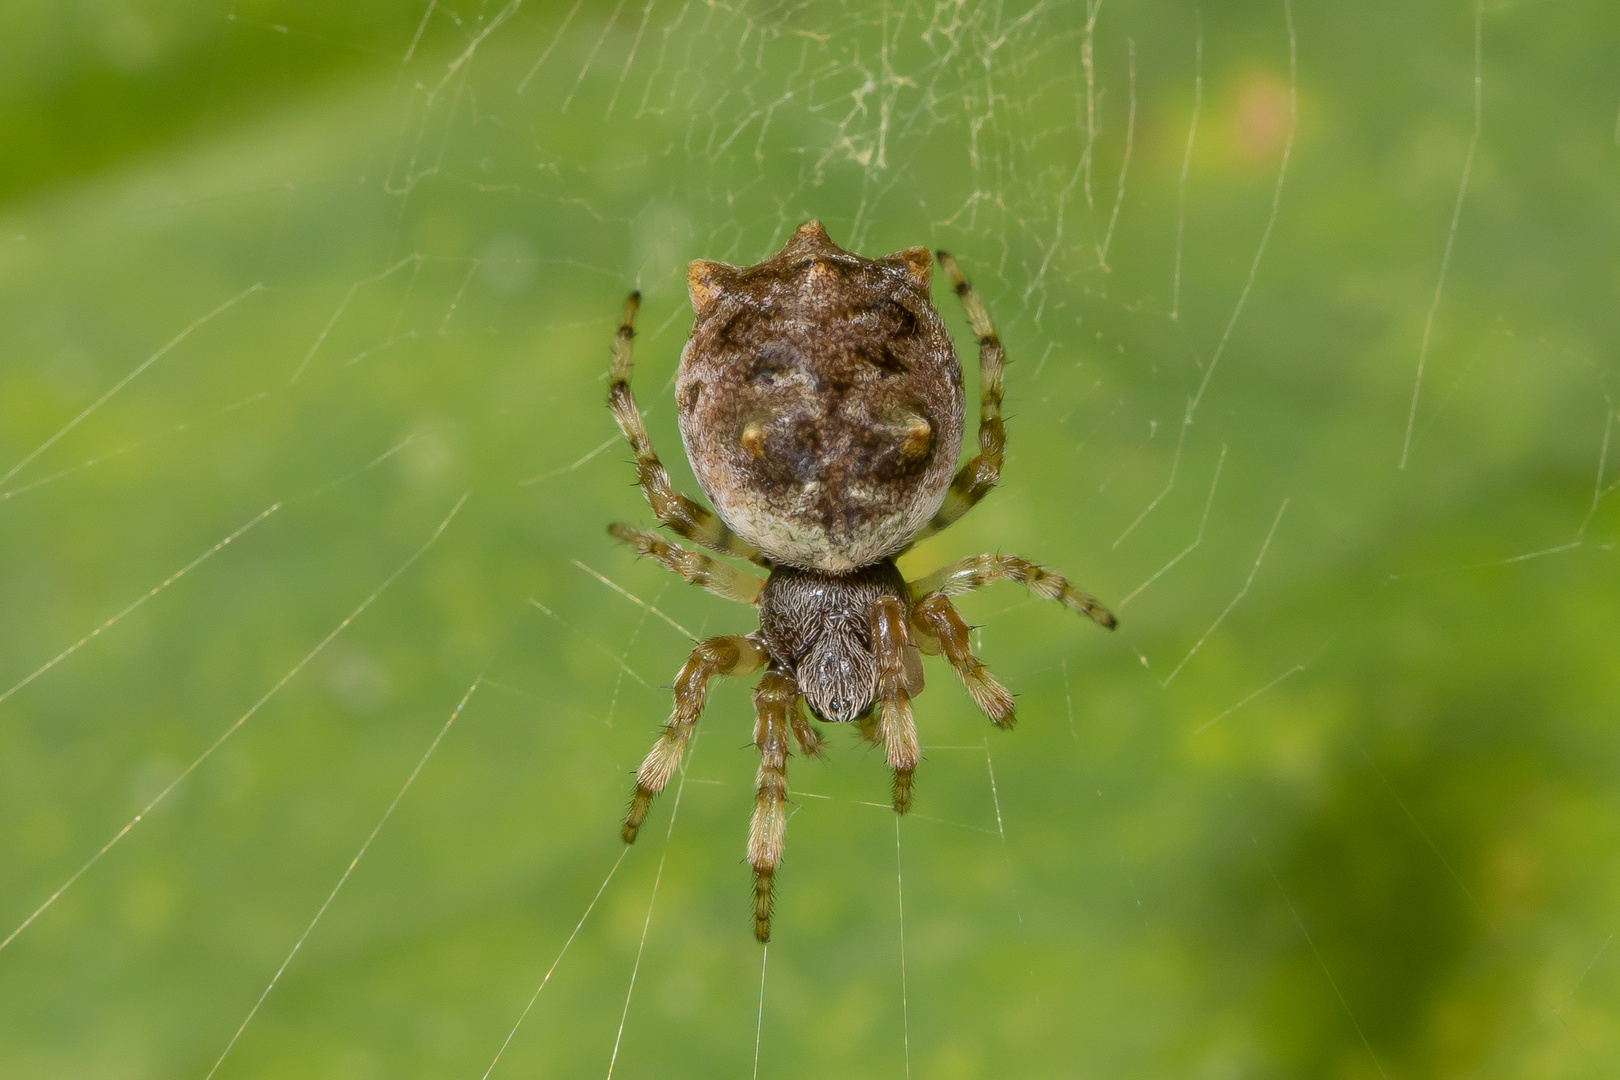 Cat-faced Spider (Aspidolasius branicki)